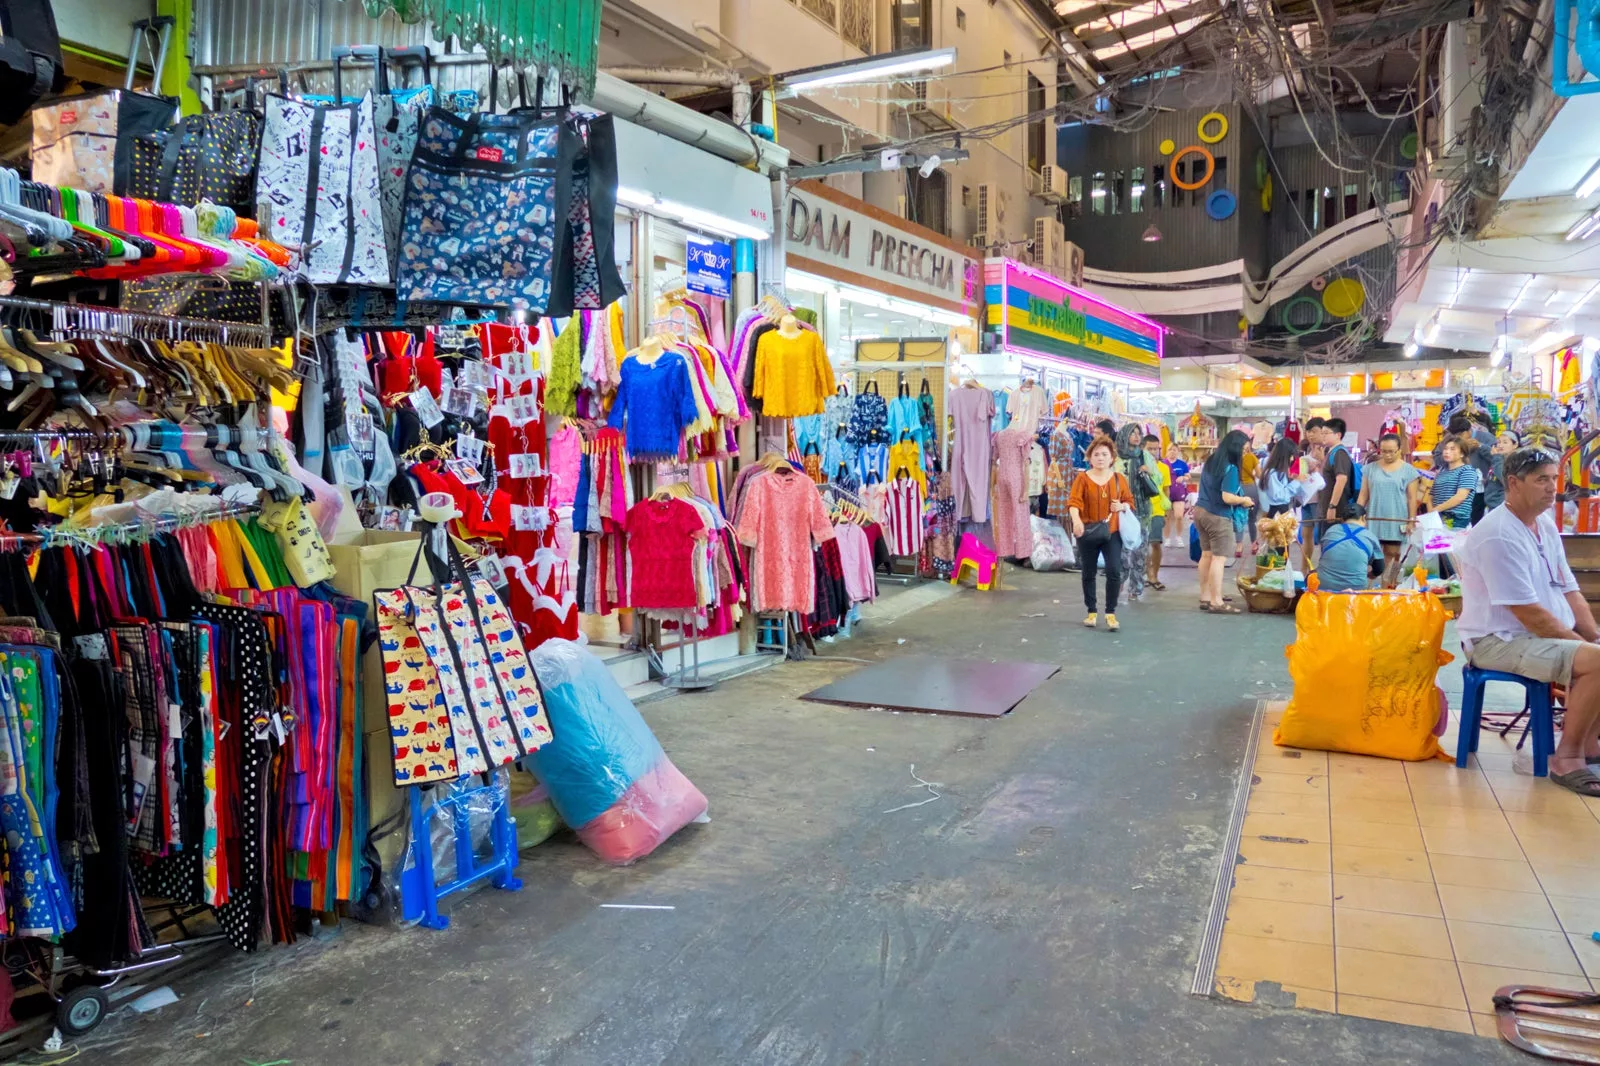  سوق براتونام بانكوك